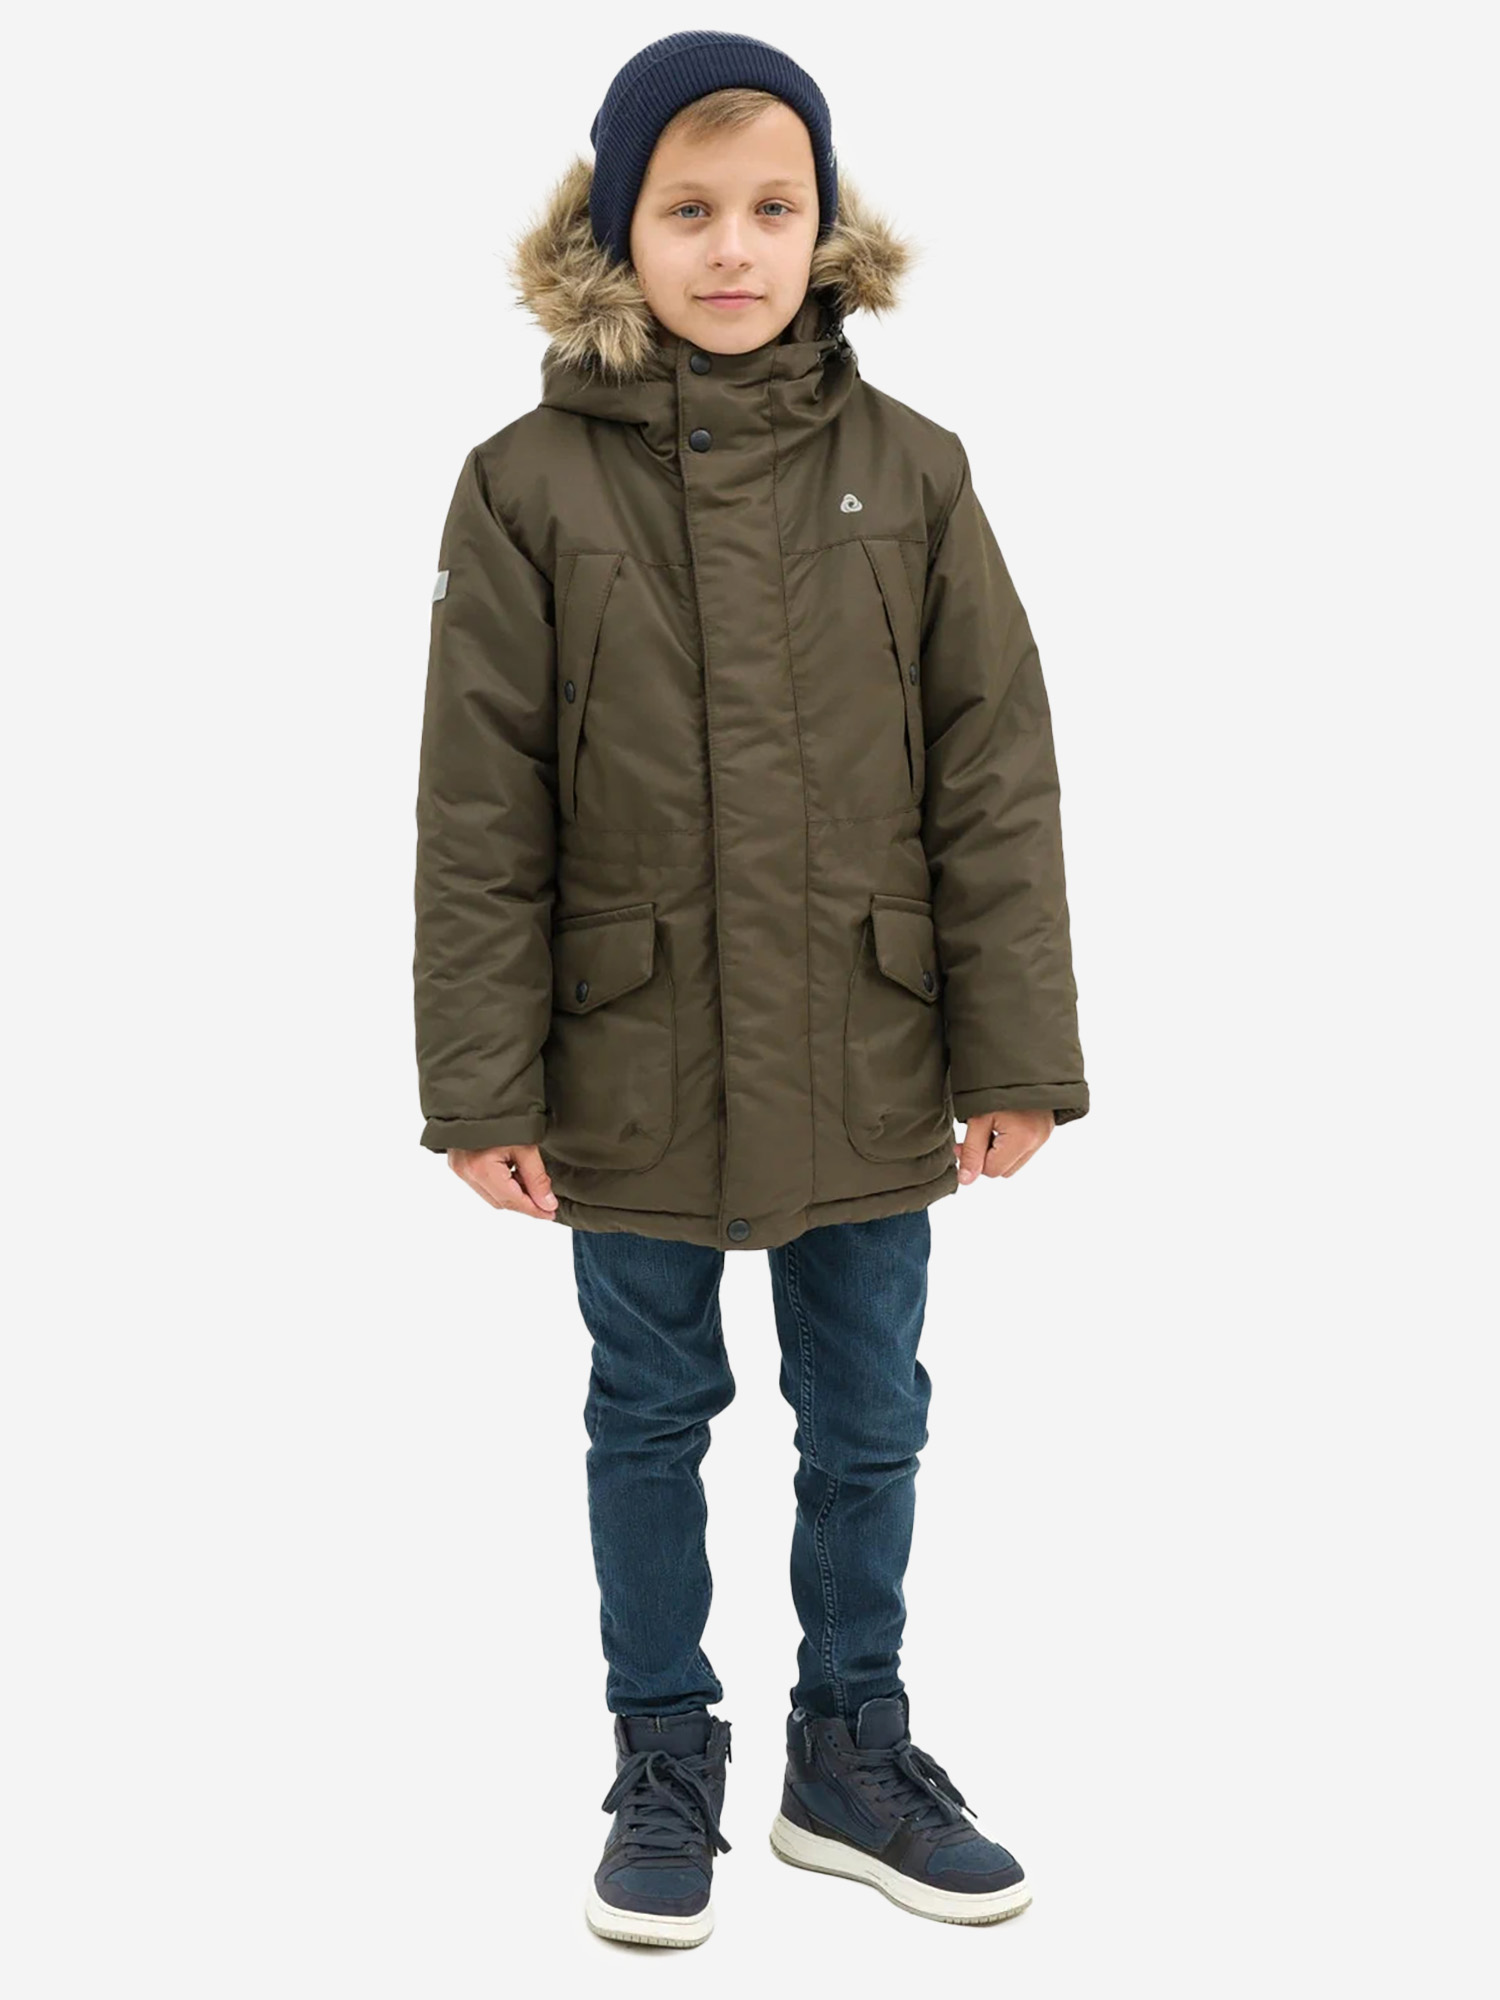 Куртка детская зимняя CosmoTex, Зеленый